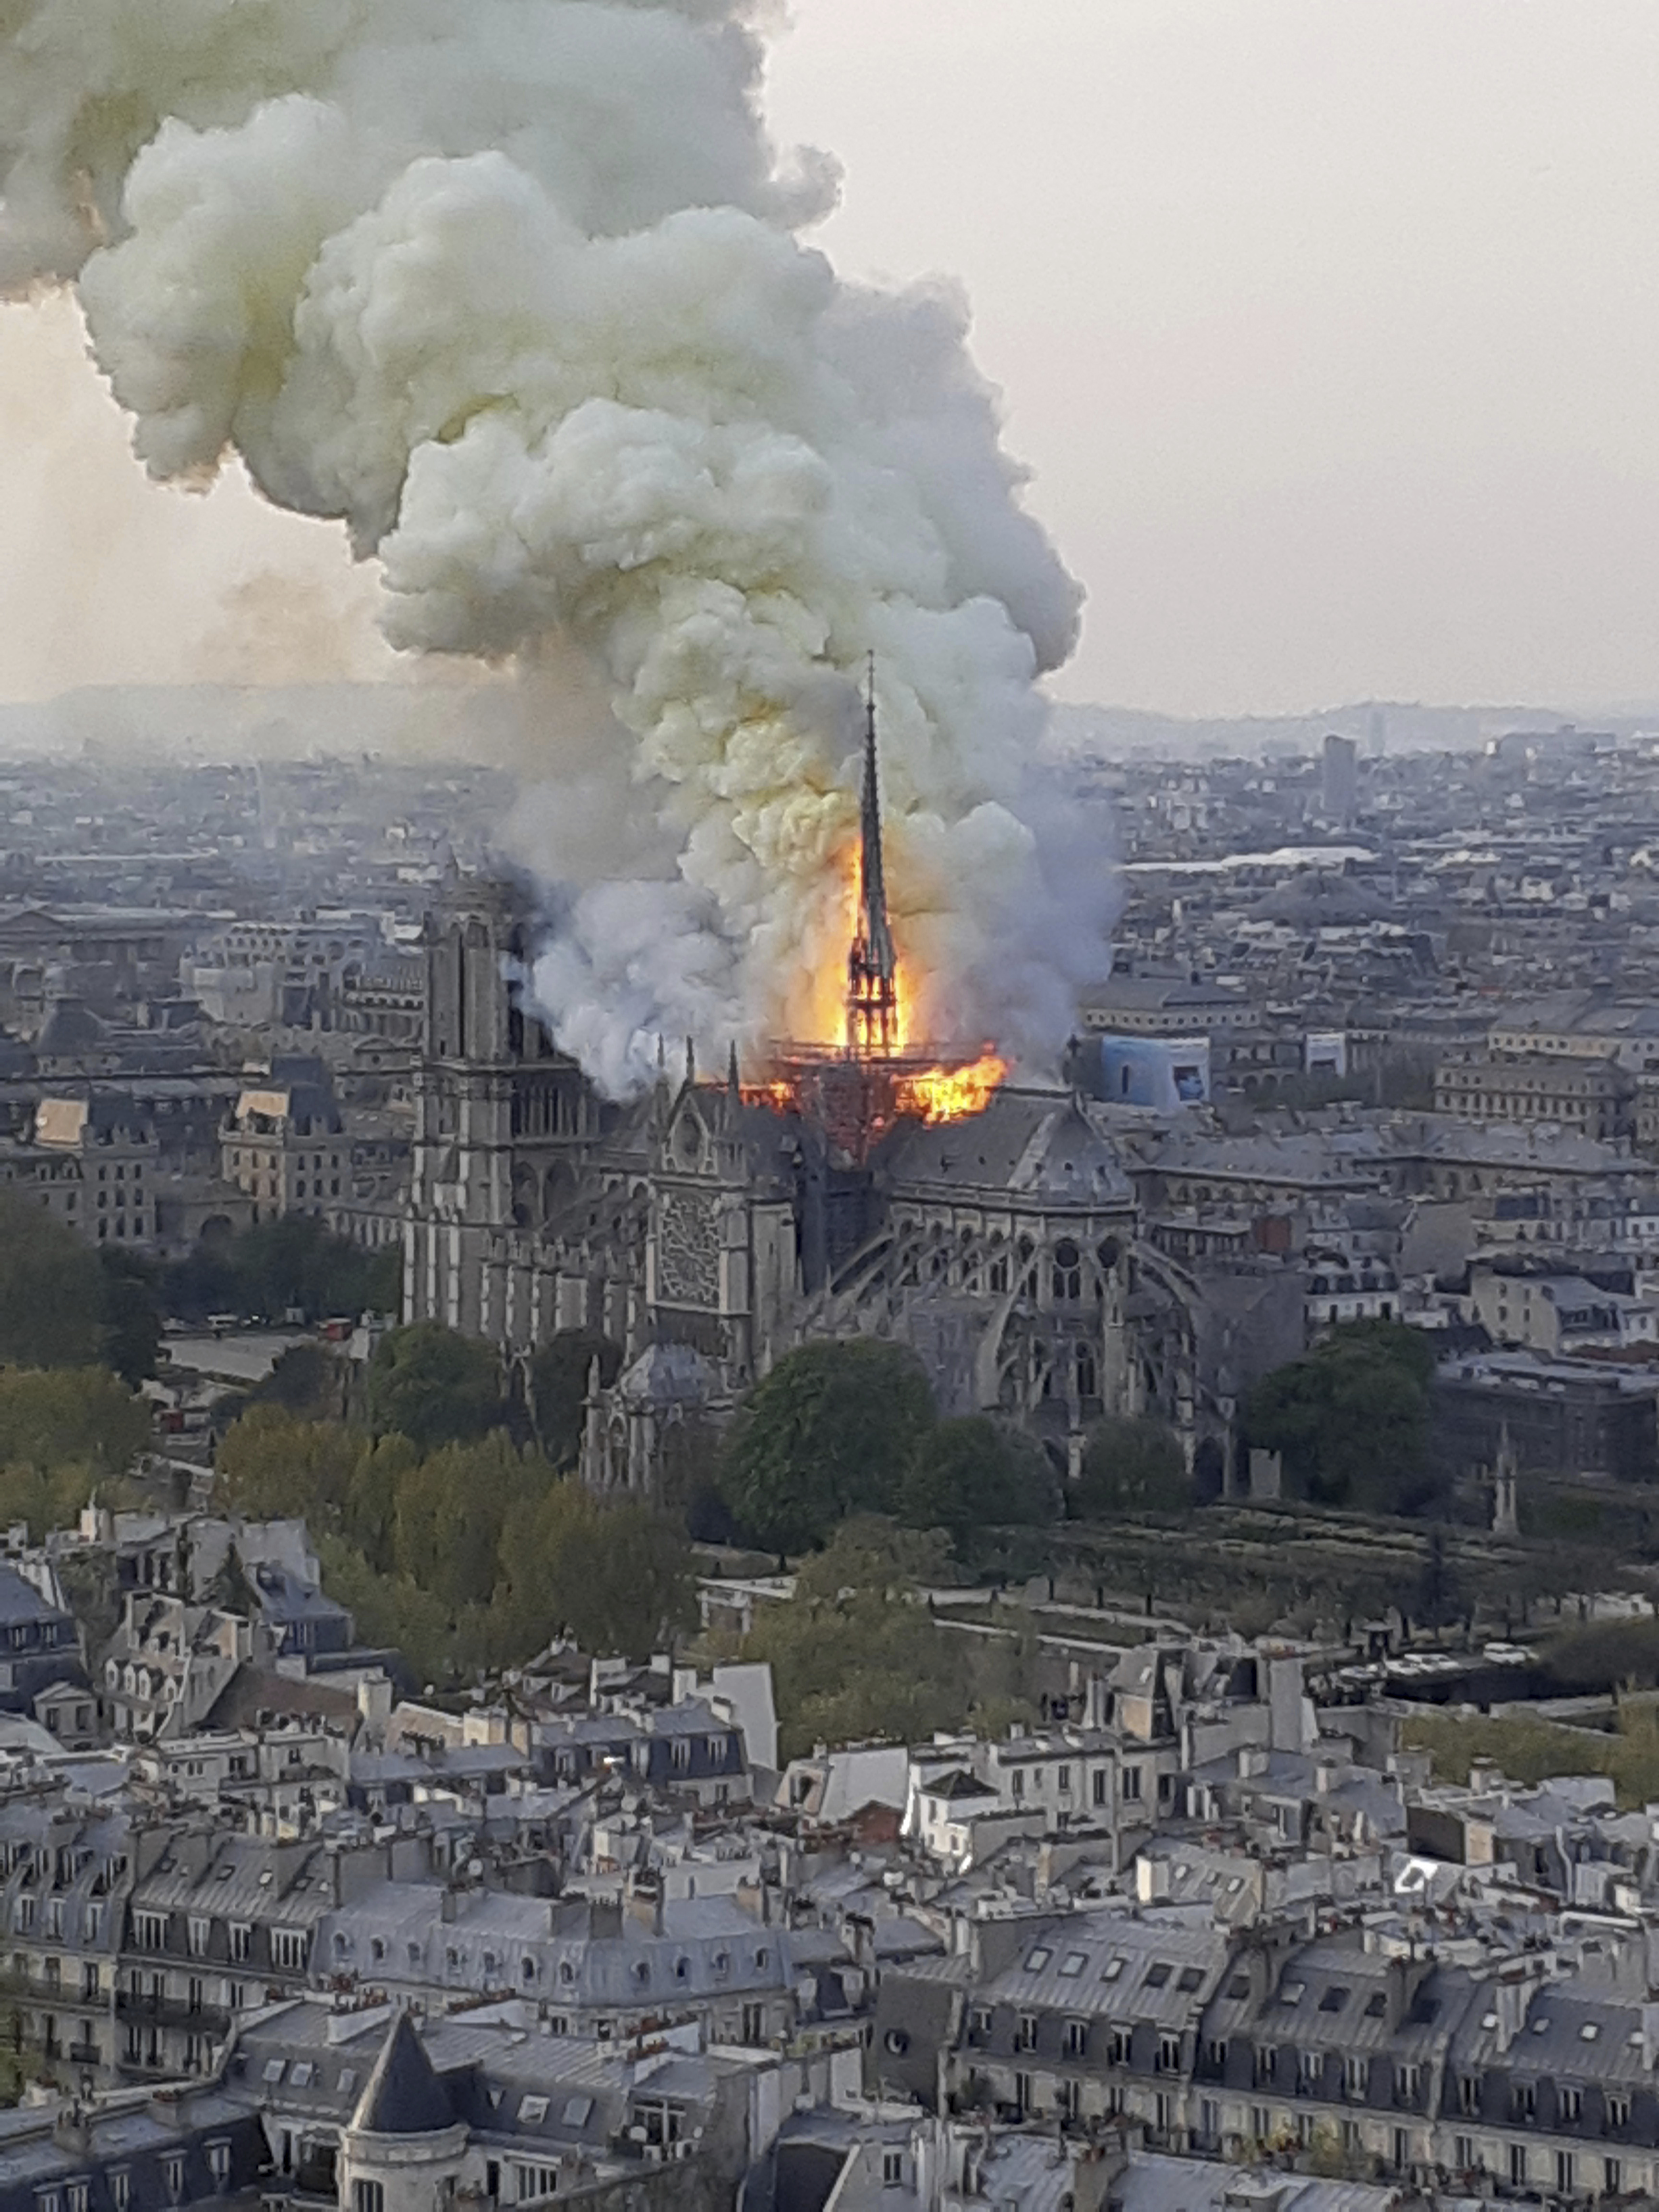 $1 billion raised to rebuild Paris' Notre Dame after fire